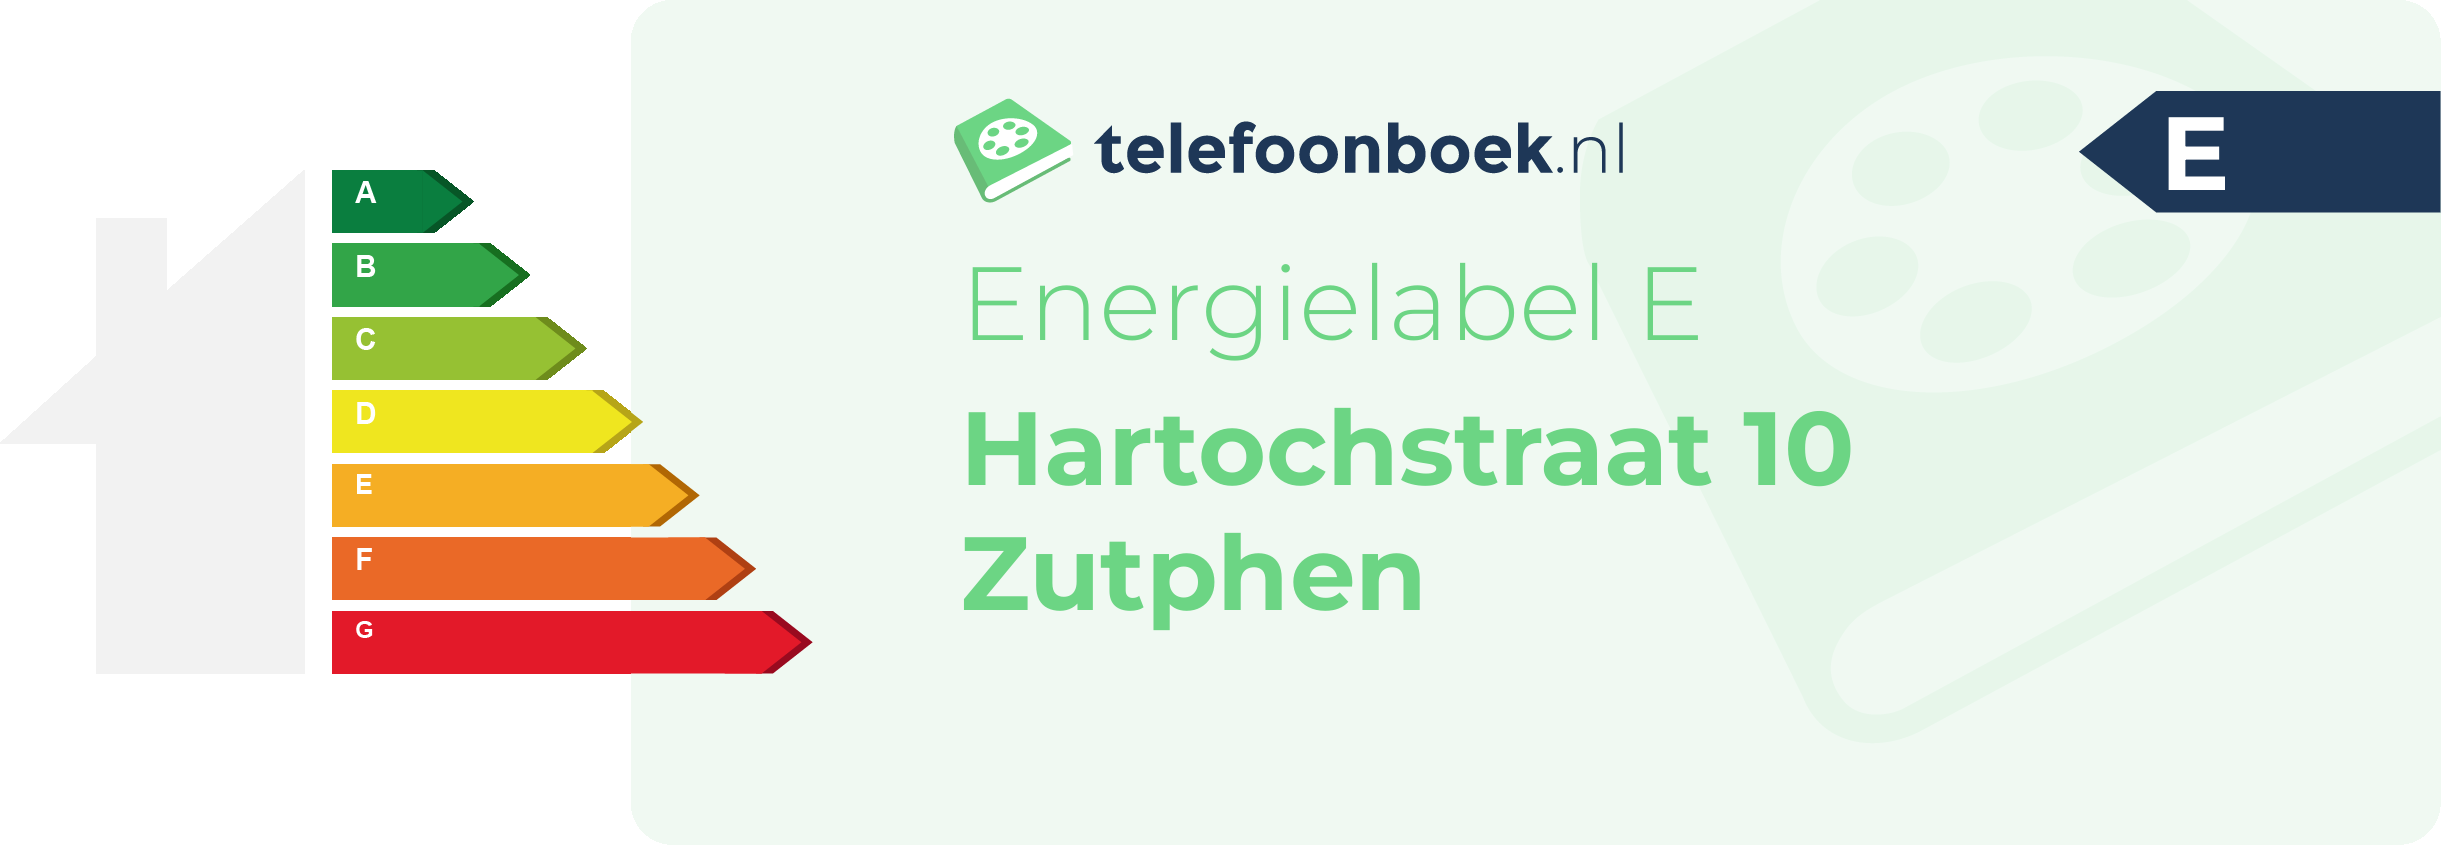 Energielabel Hartochstraat 10 Zutphen